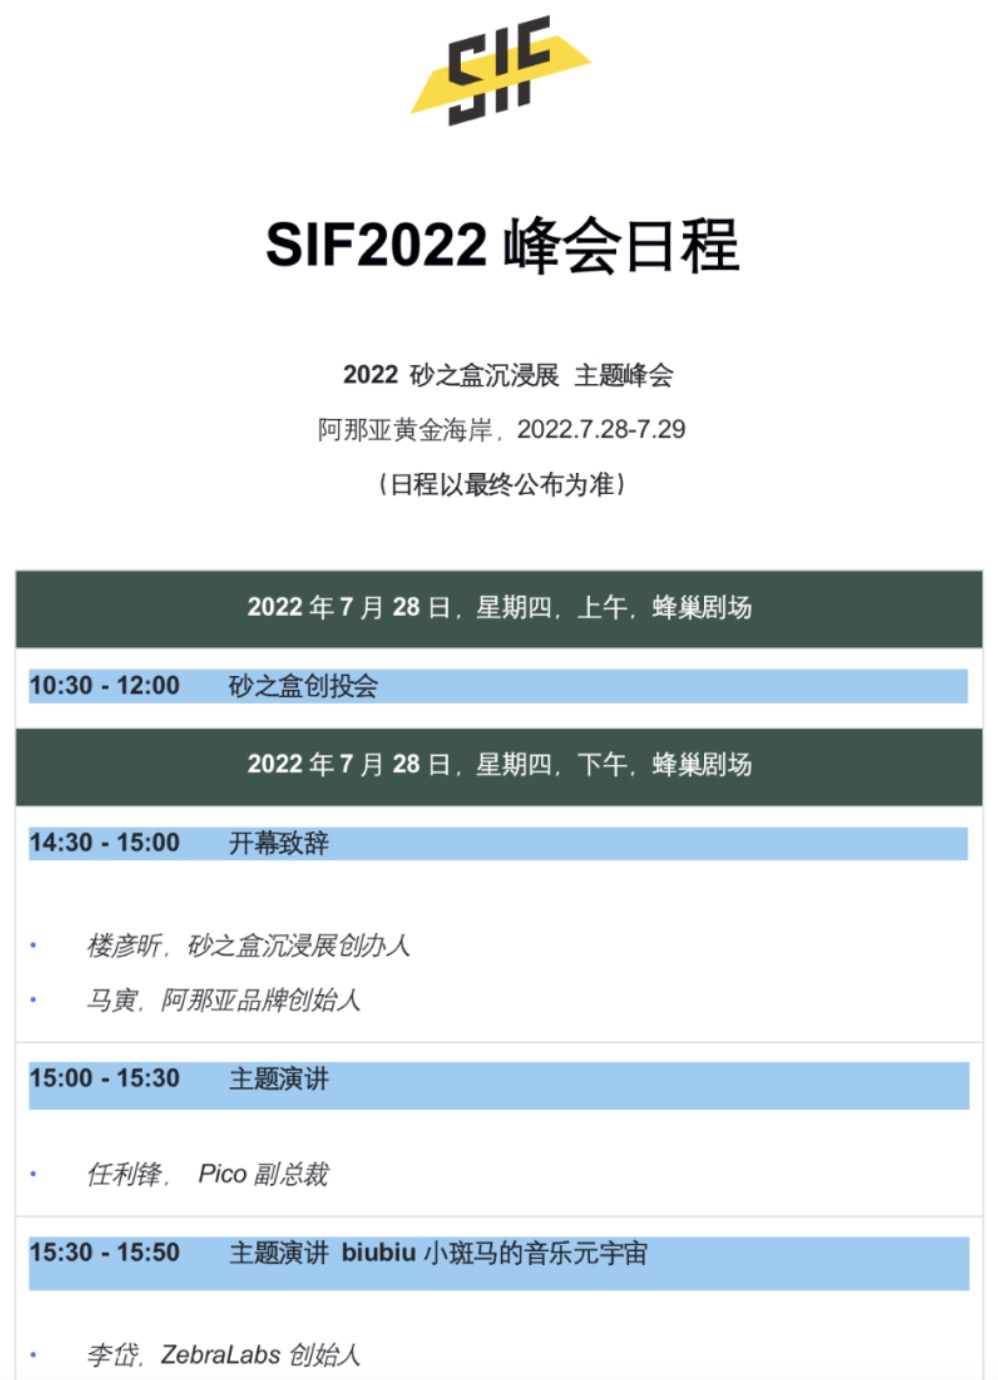 SIF 2022 “就地离线” 峰会日程正式公布